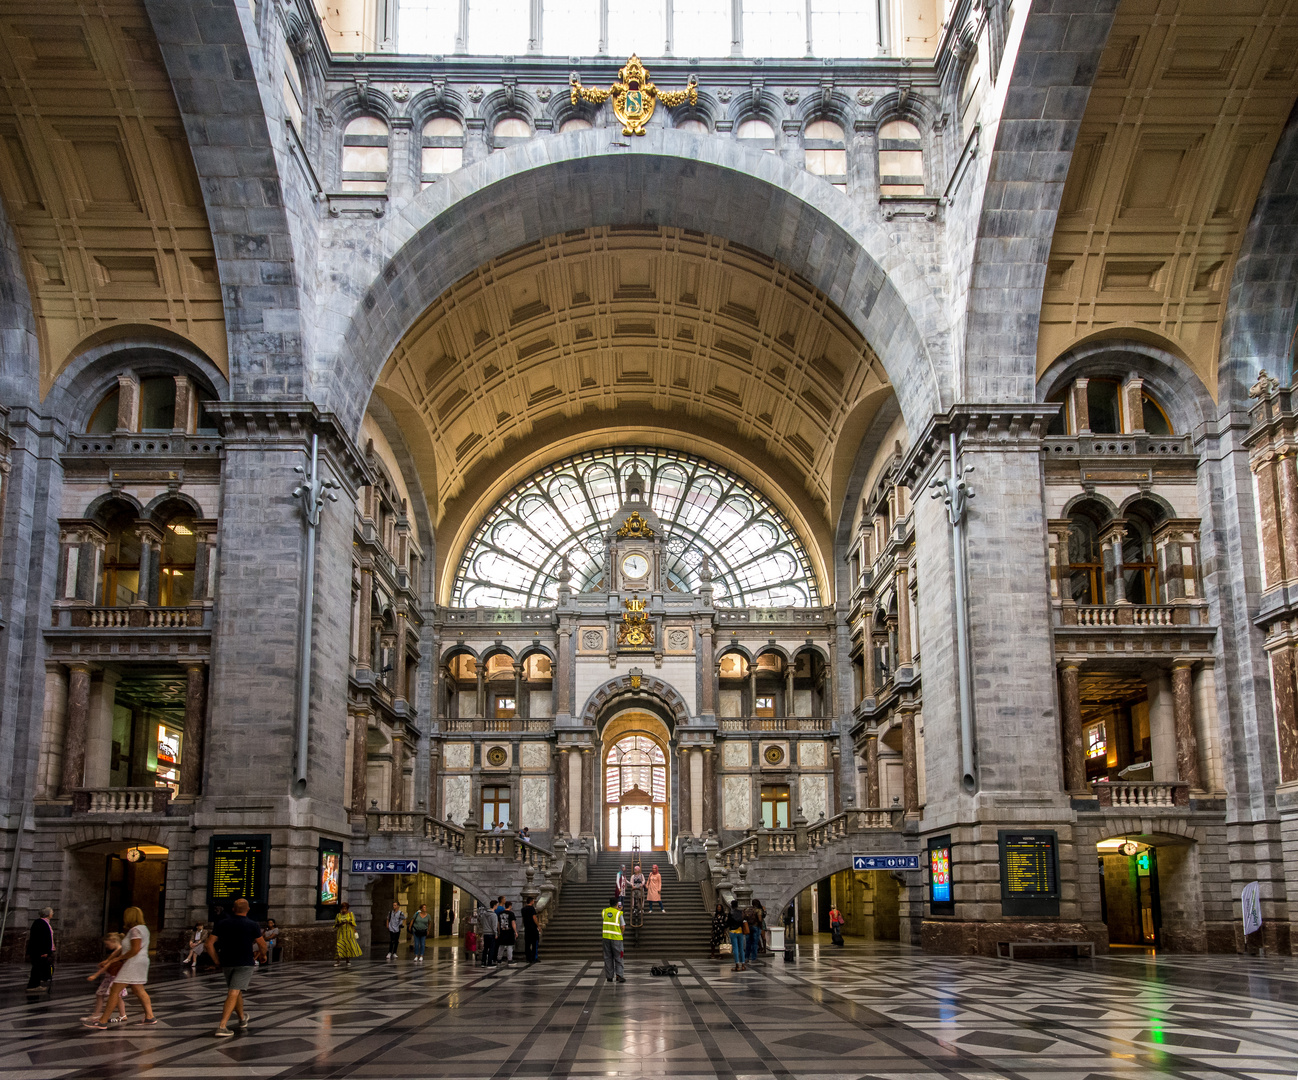 Antwerpen - Central Railway Station - 03